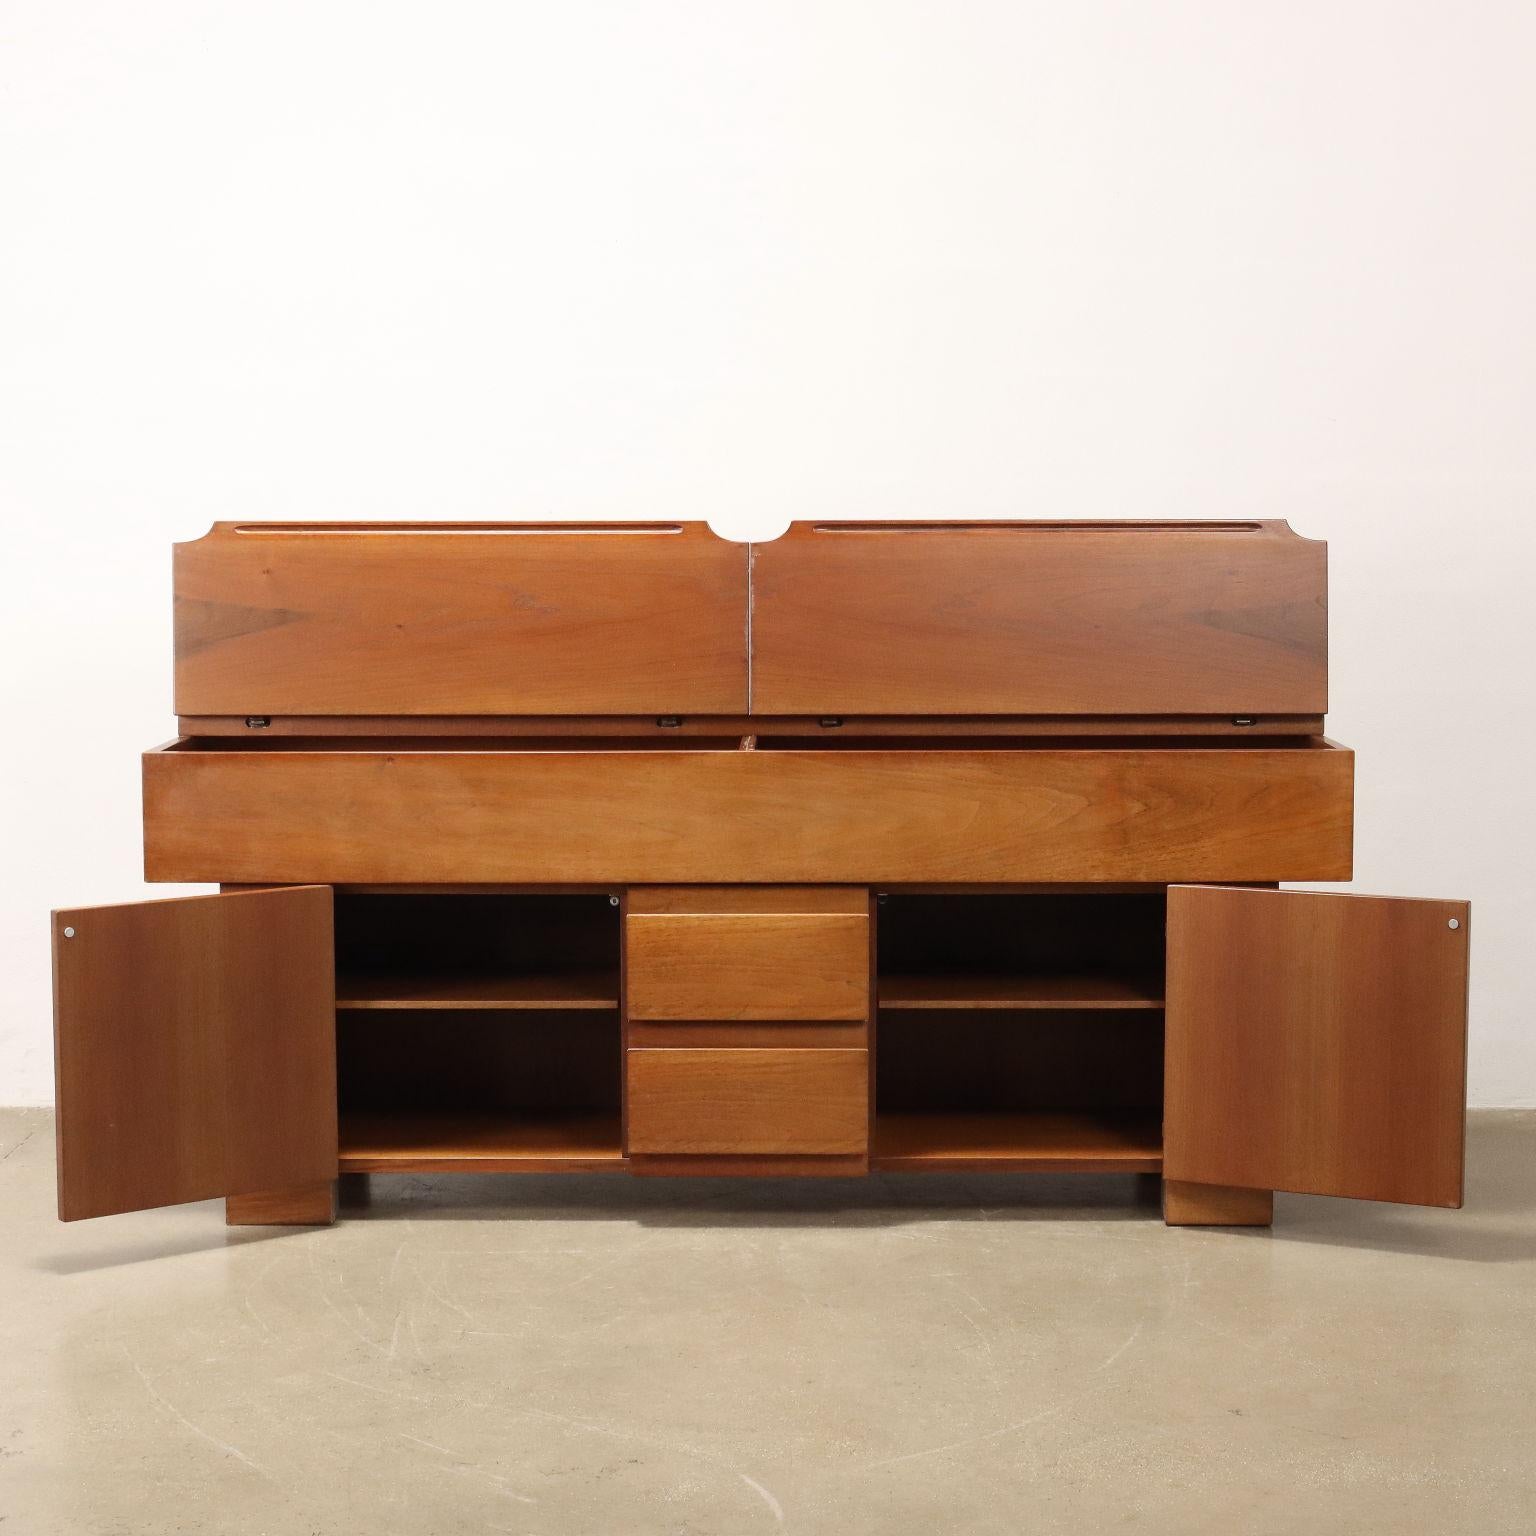 Mid-Century Modern 'Torbecchia' cabinet by Giovanni Michelucci for Poltronova 1960s-70s